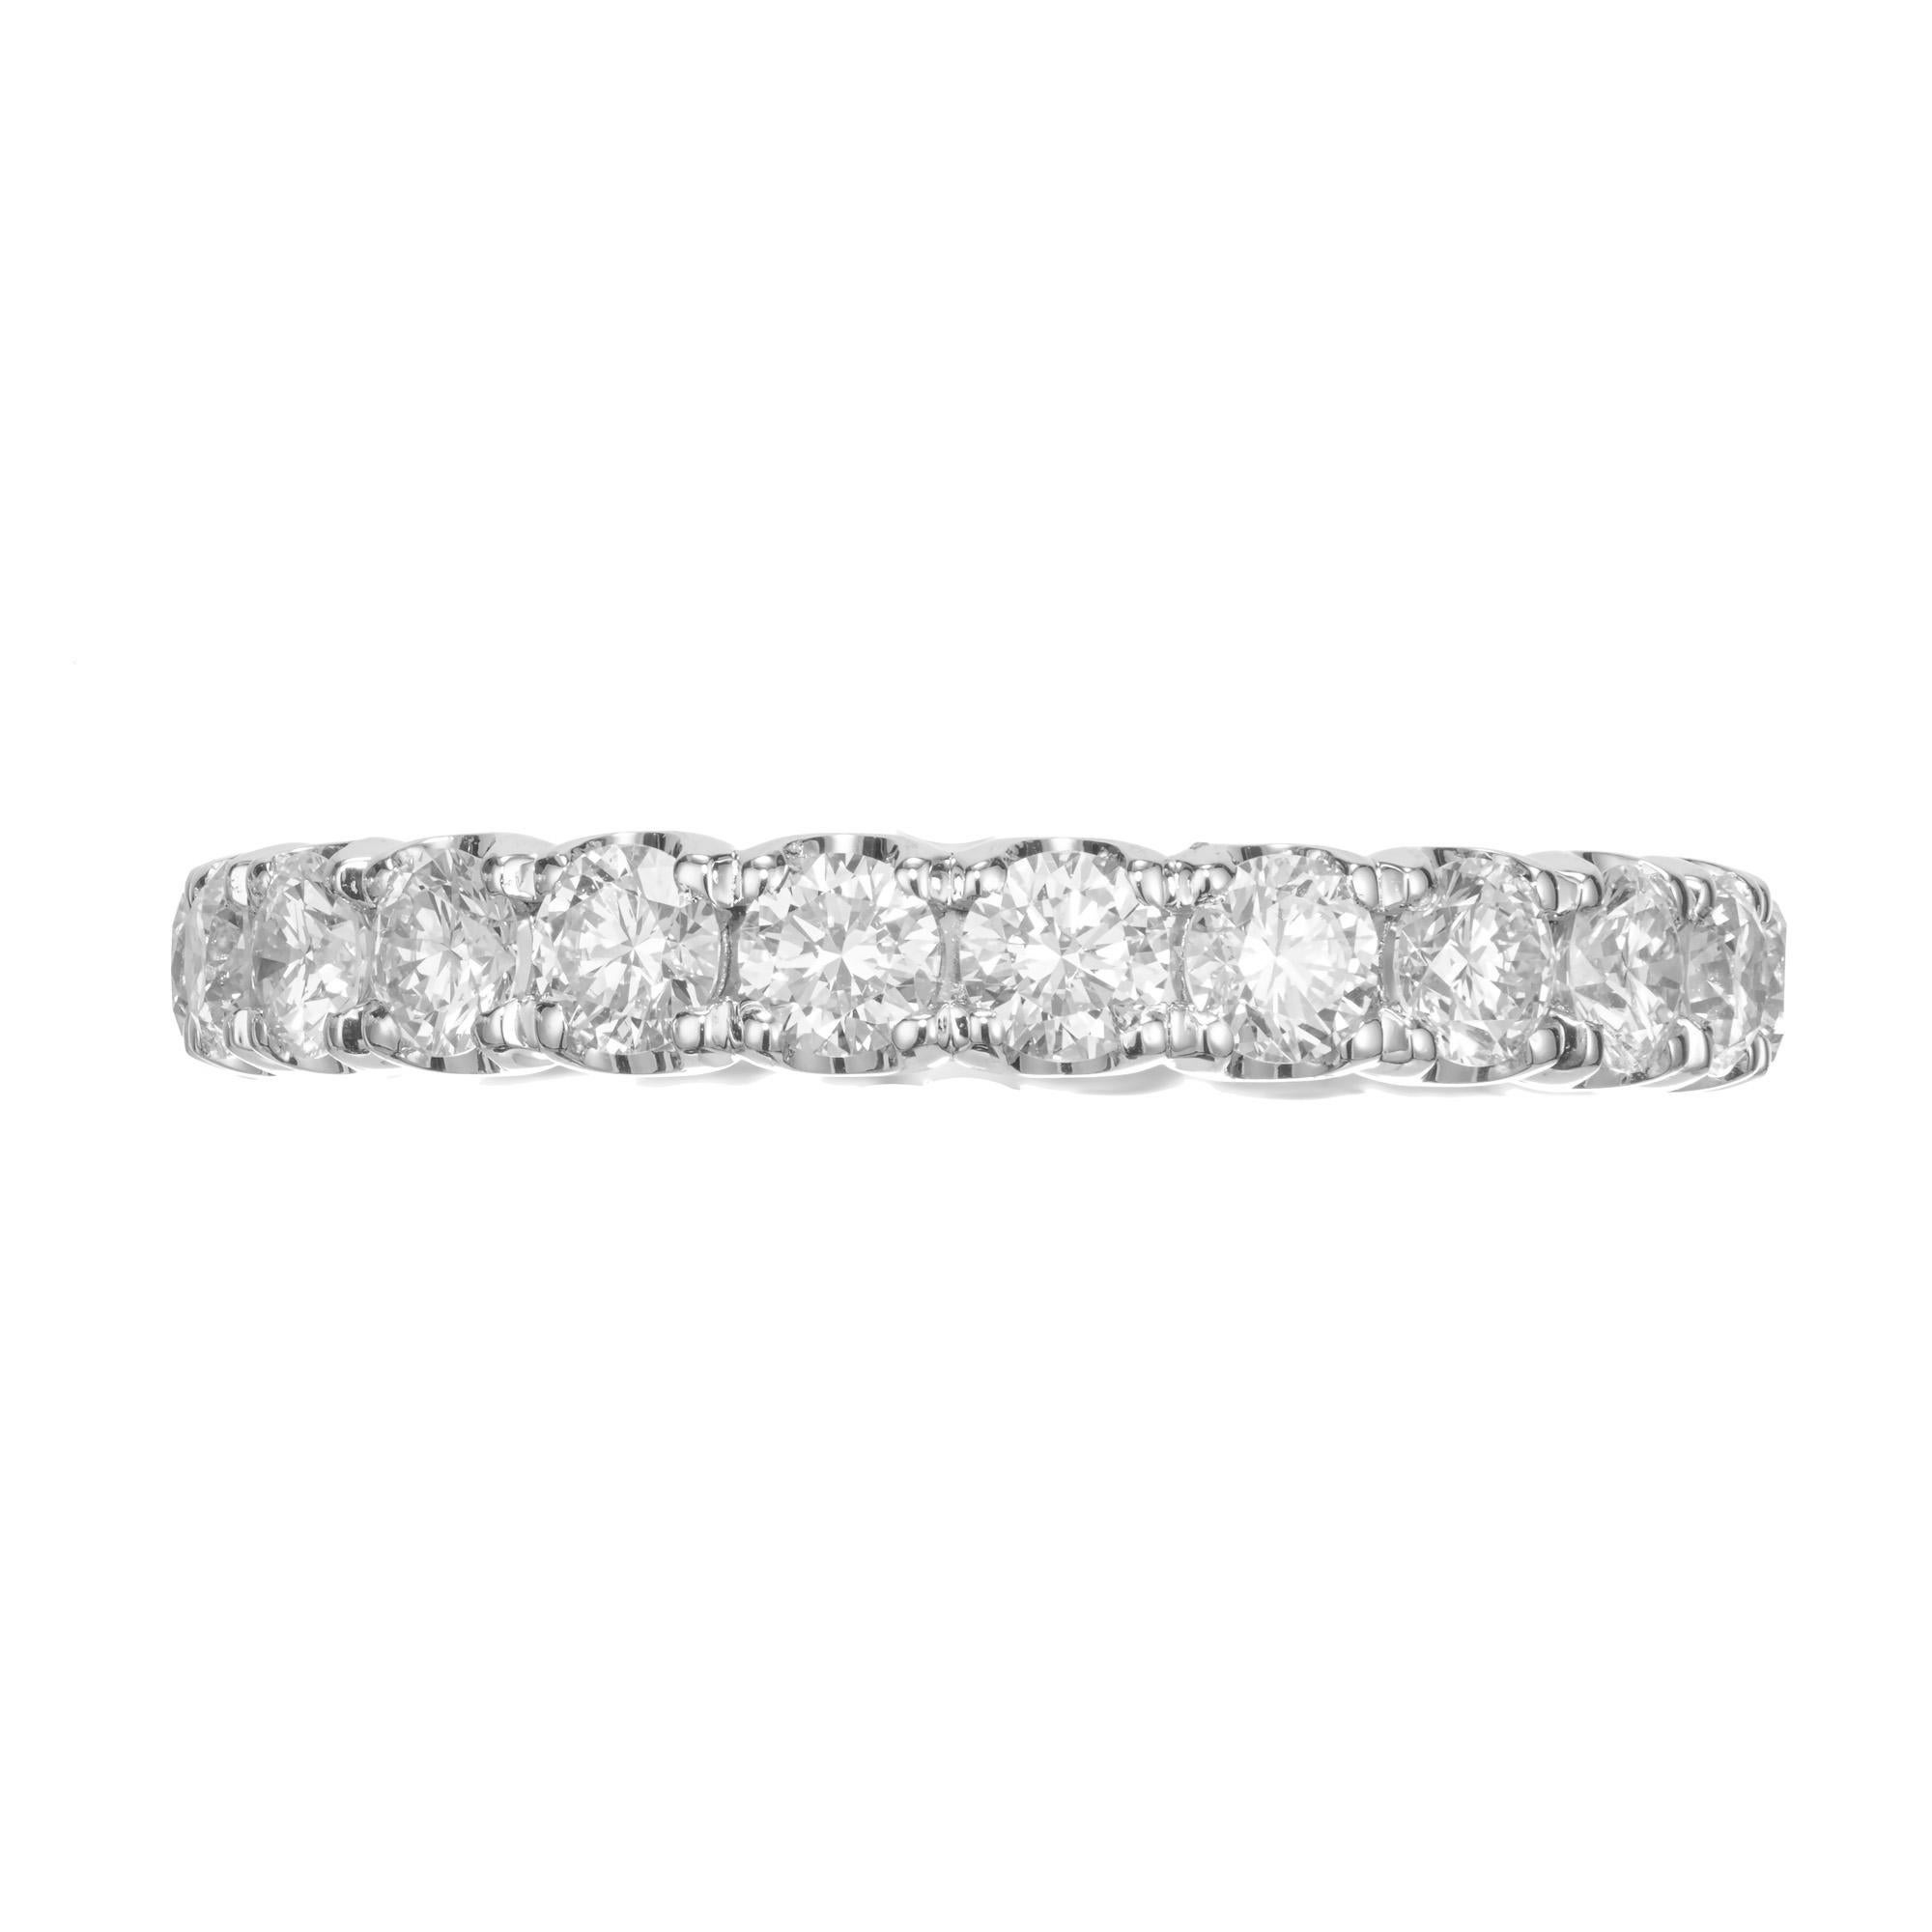 Schöner gebogener Zacken-Diamanten-Ehering. 22 runde Diamanten im Brillantschliff mit einem Gesamtgewicht von 1,97 Karat, eingefasst in einer massiven Platinfassung mit gemeinsamen Zacken für die Ewigkeit. Nicht beträchtlich. Kann in jeder Diamant-